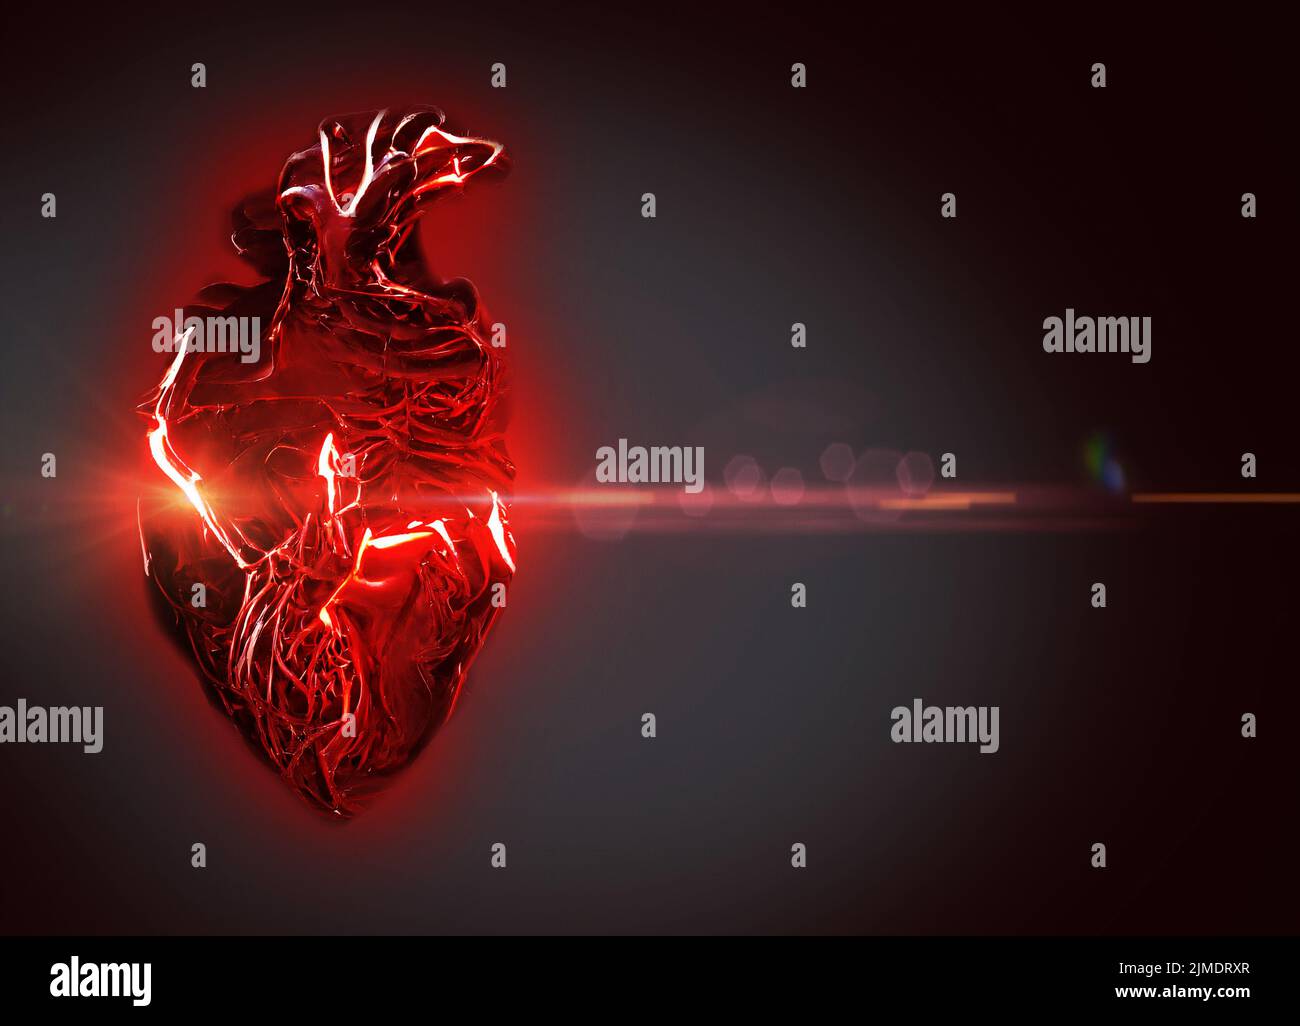 Heart attack, conceptual illustration. Stock Photo